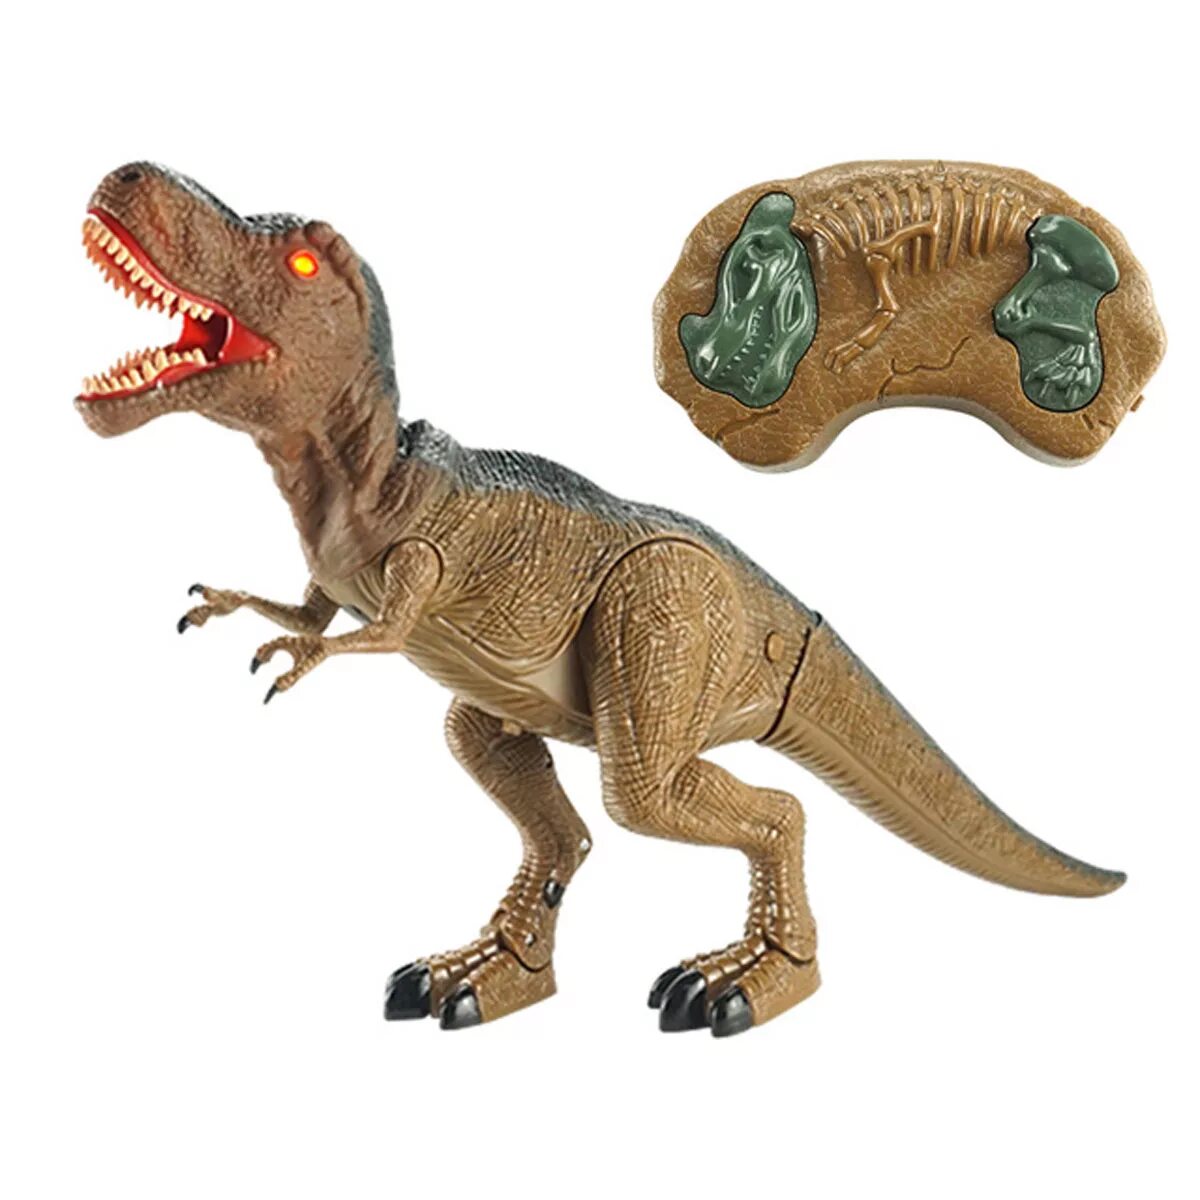 Игрушка Тирекс динозавр с пультом. Тираннозавр рекс на пульте управления. Динозавры на пульте Тирекс. Большой динозавр Тирекс игрушка.